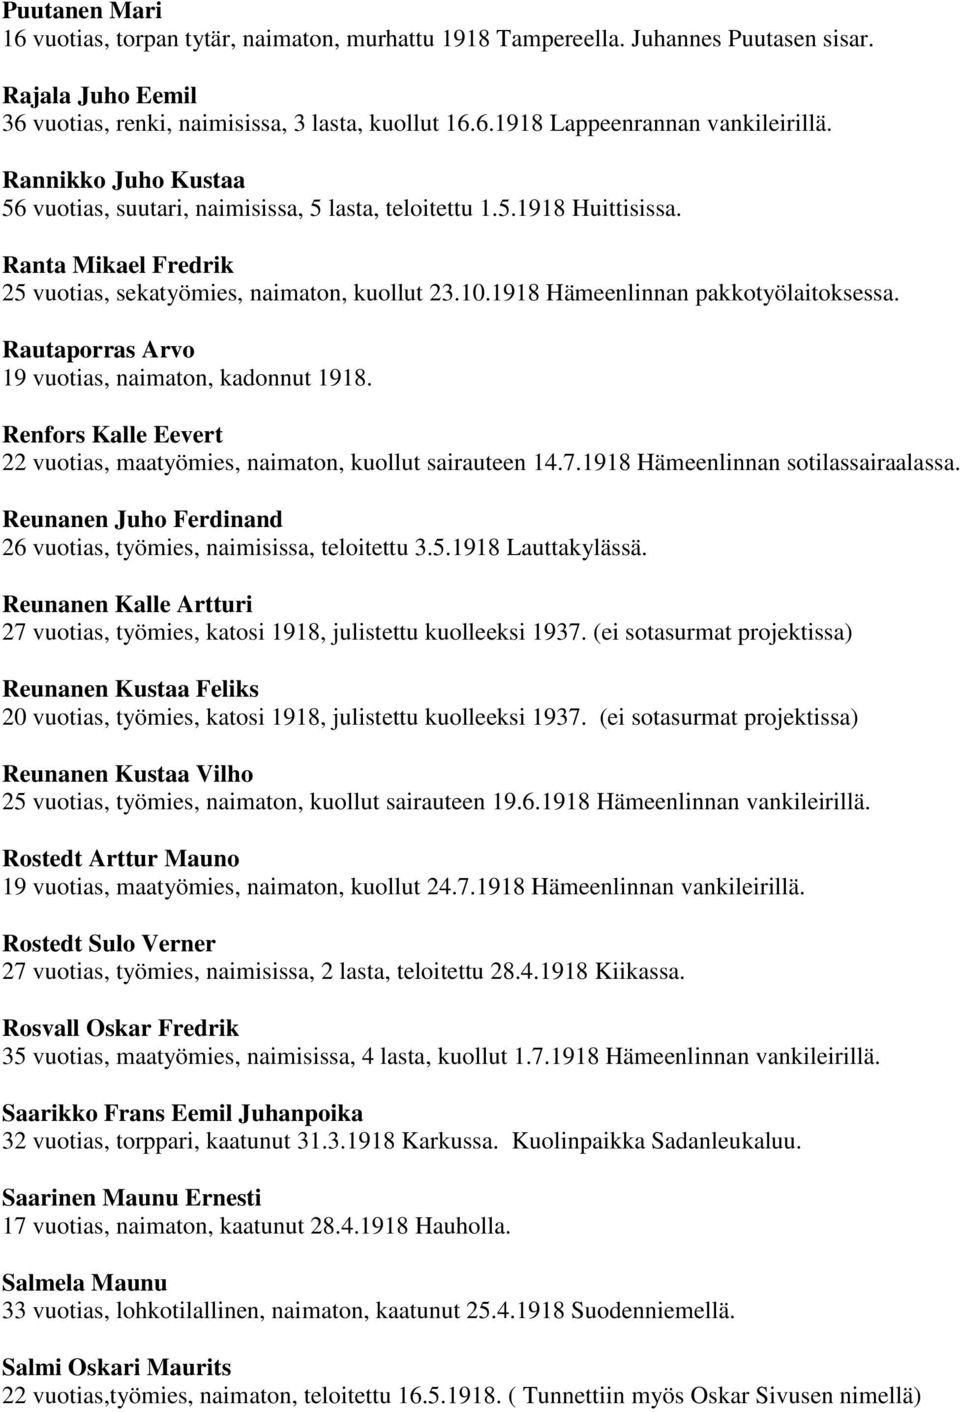 1918 Hämeenlinnan pakkotyölaitoksessa. Rautaporras Arvo 19 vuotias, naimaton, kadonnut 1918. Renfors Kalle Eevert 22 vuotias, maatyömies, naimaton, kuollut sairauteen 14.7.